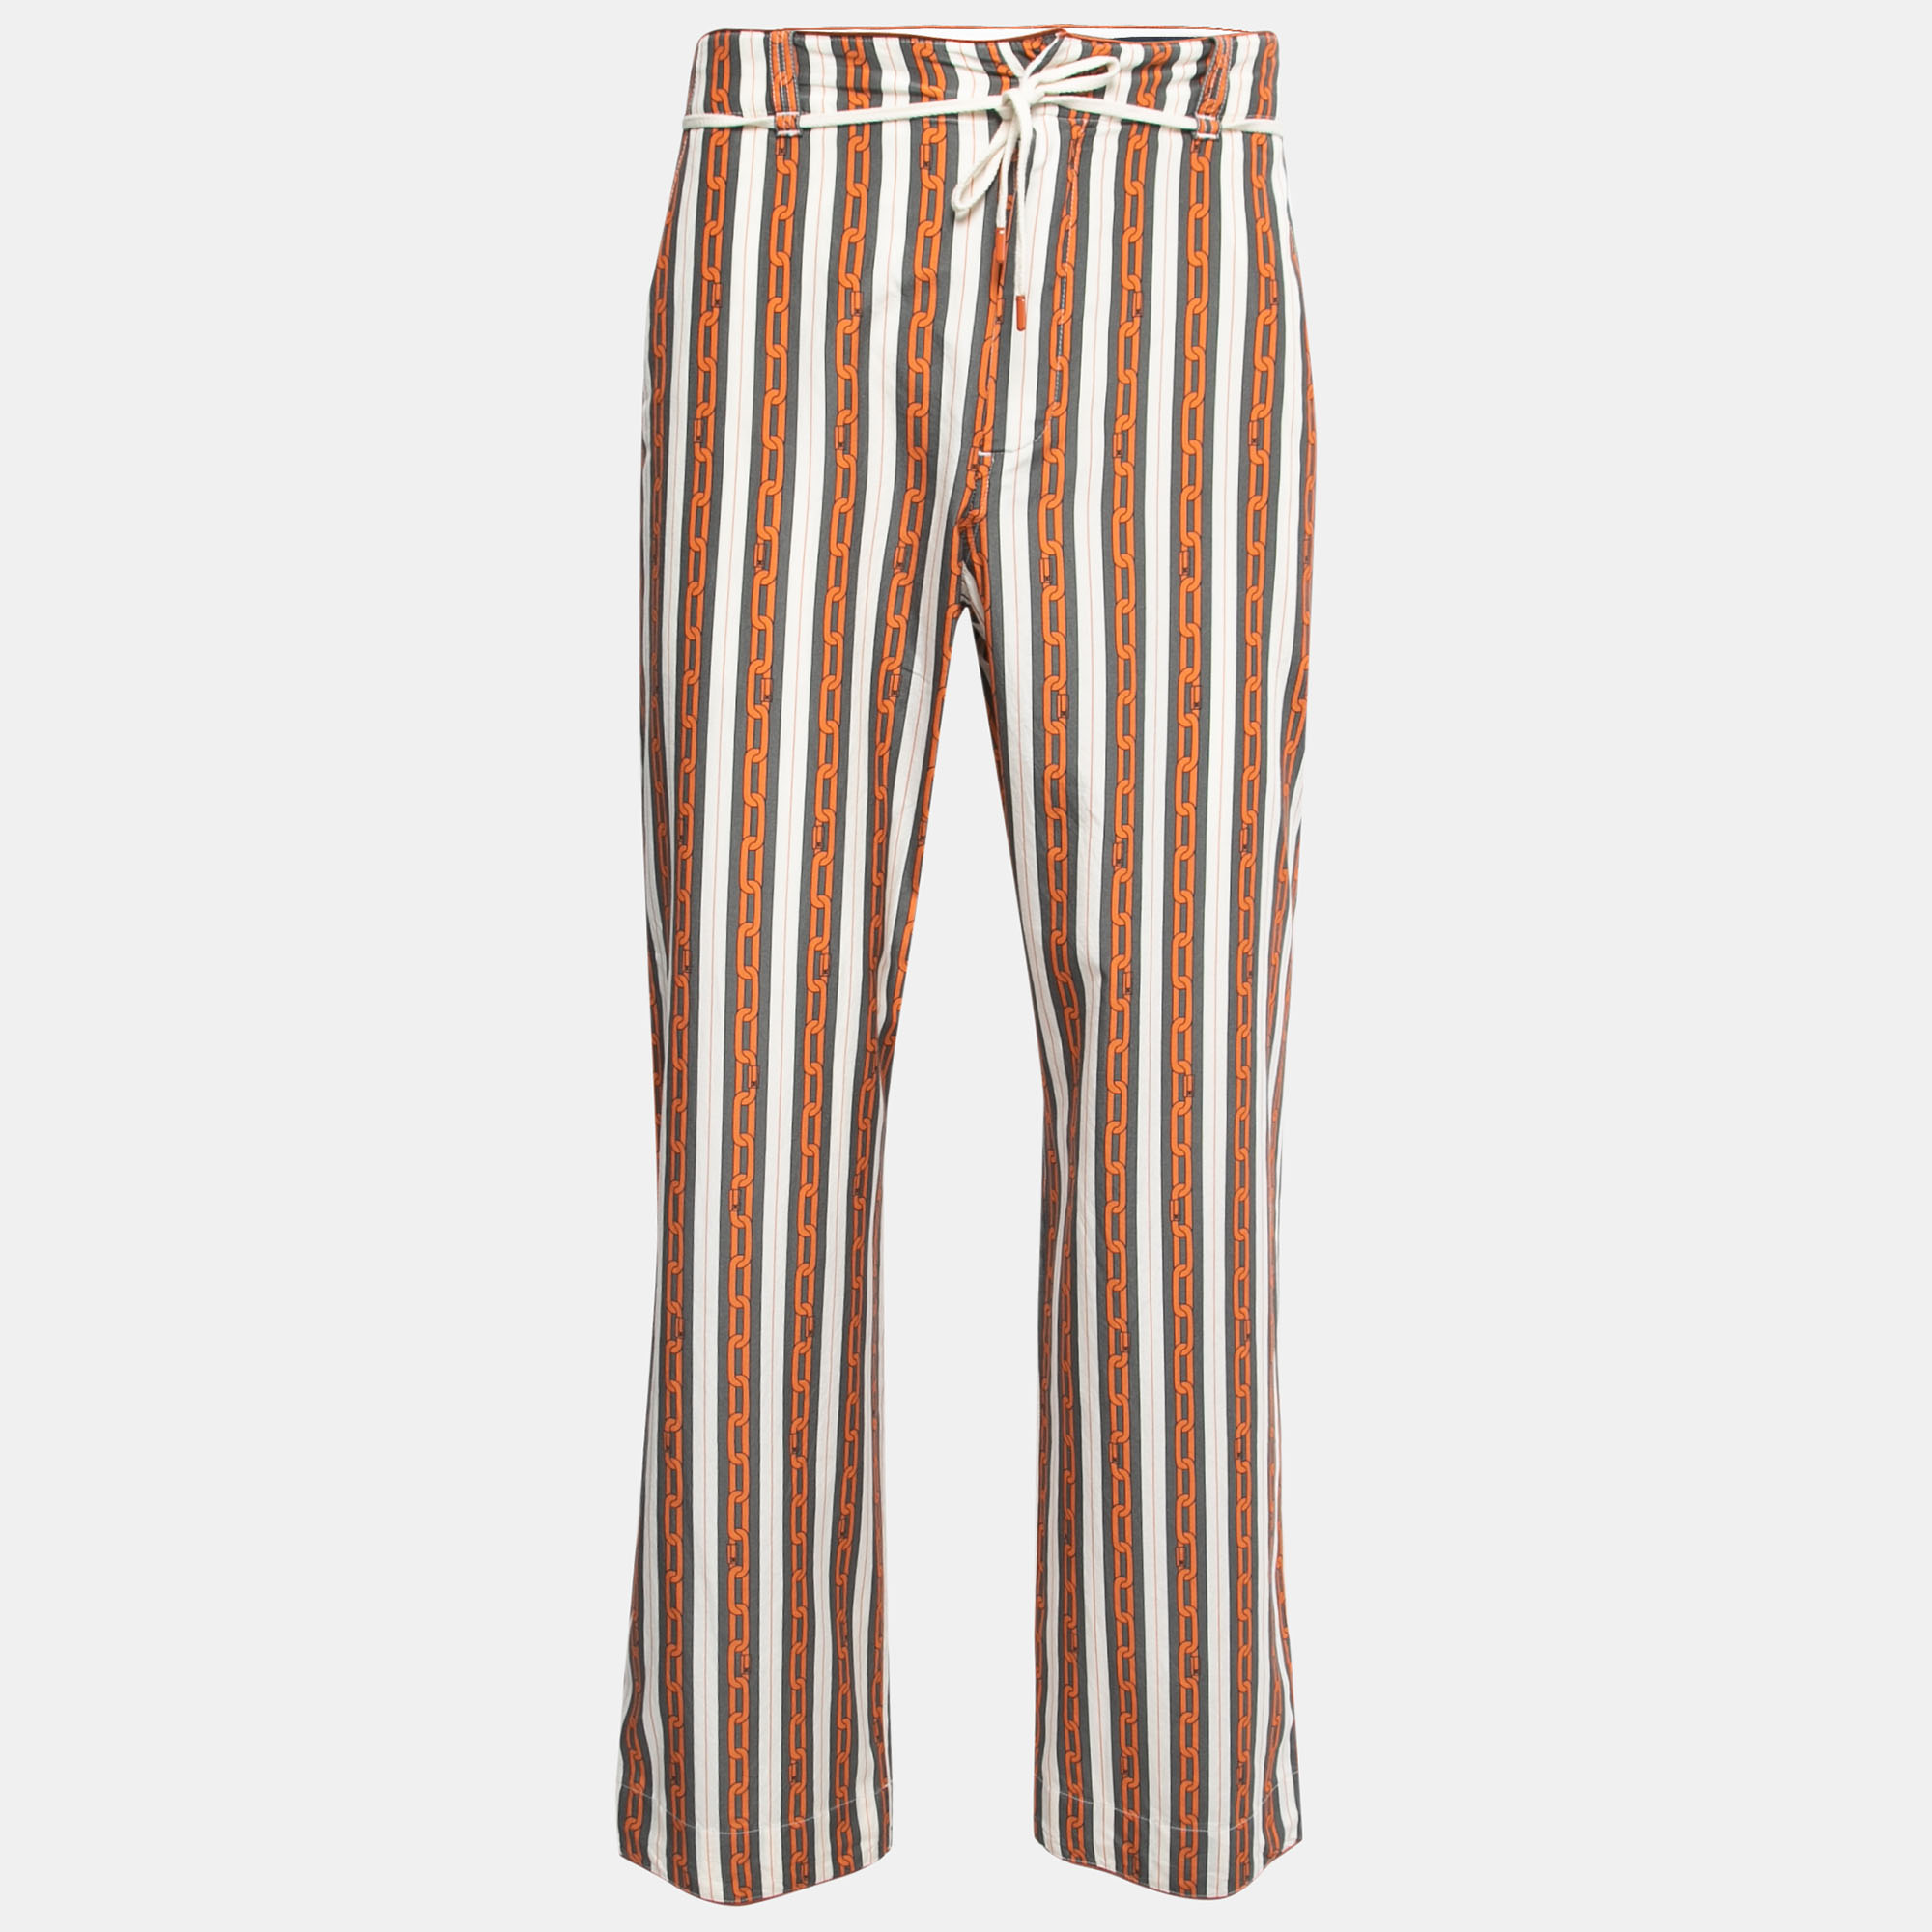 Authentic Louis Vuitton x Nigo Vintage Men's 20AW Pants Damier Size 38